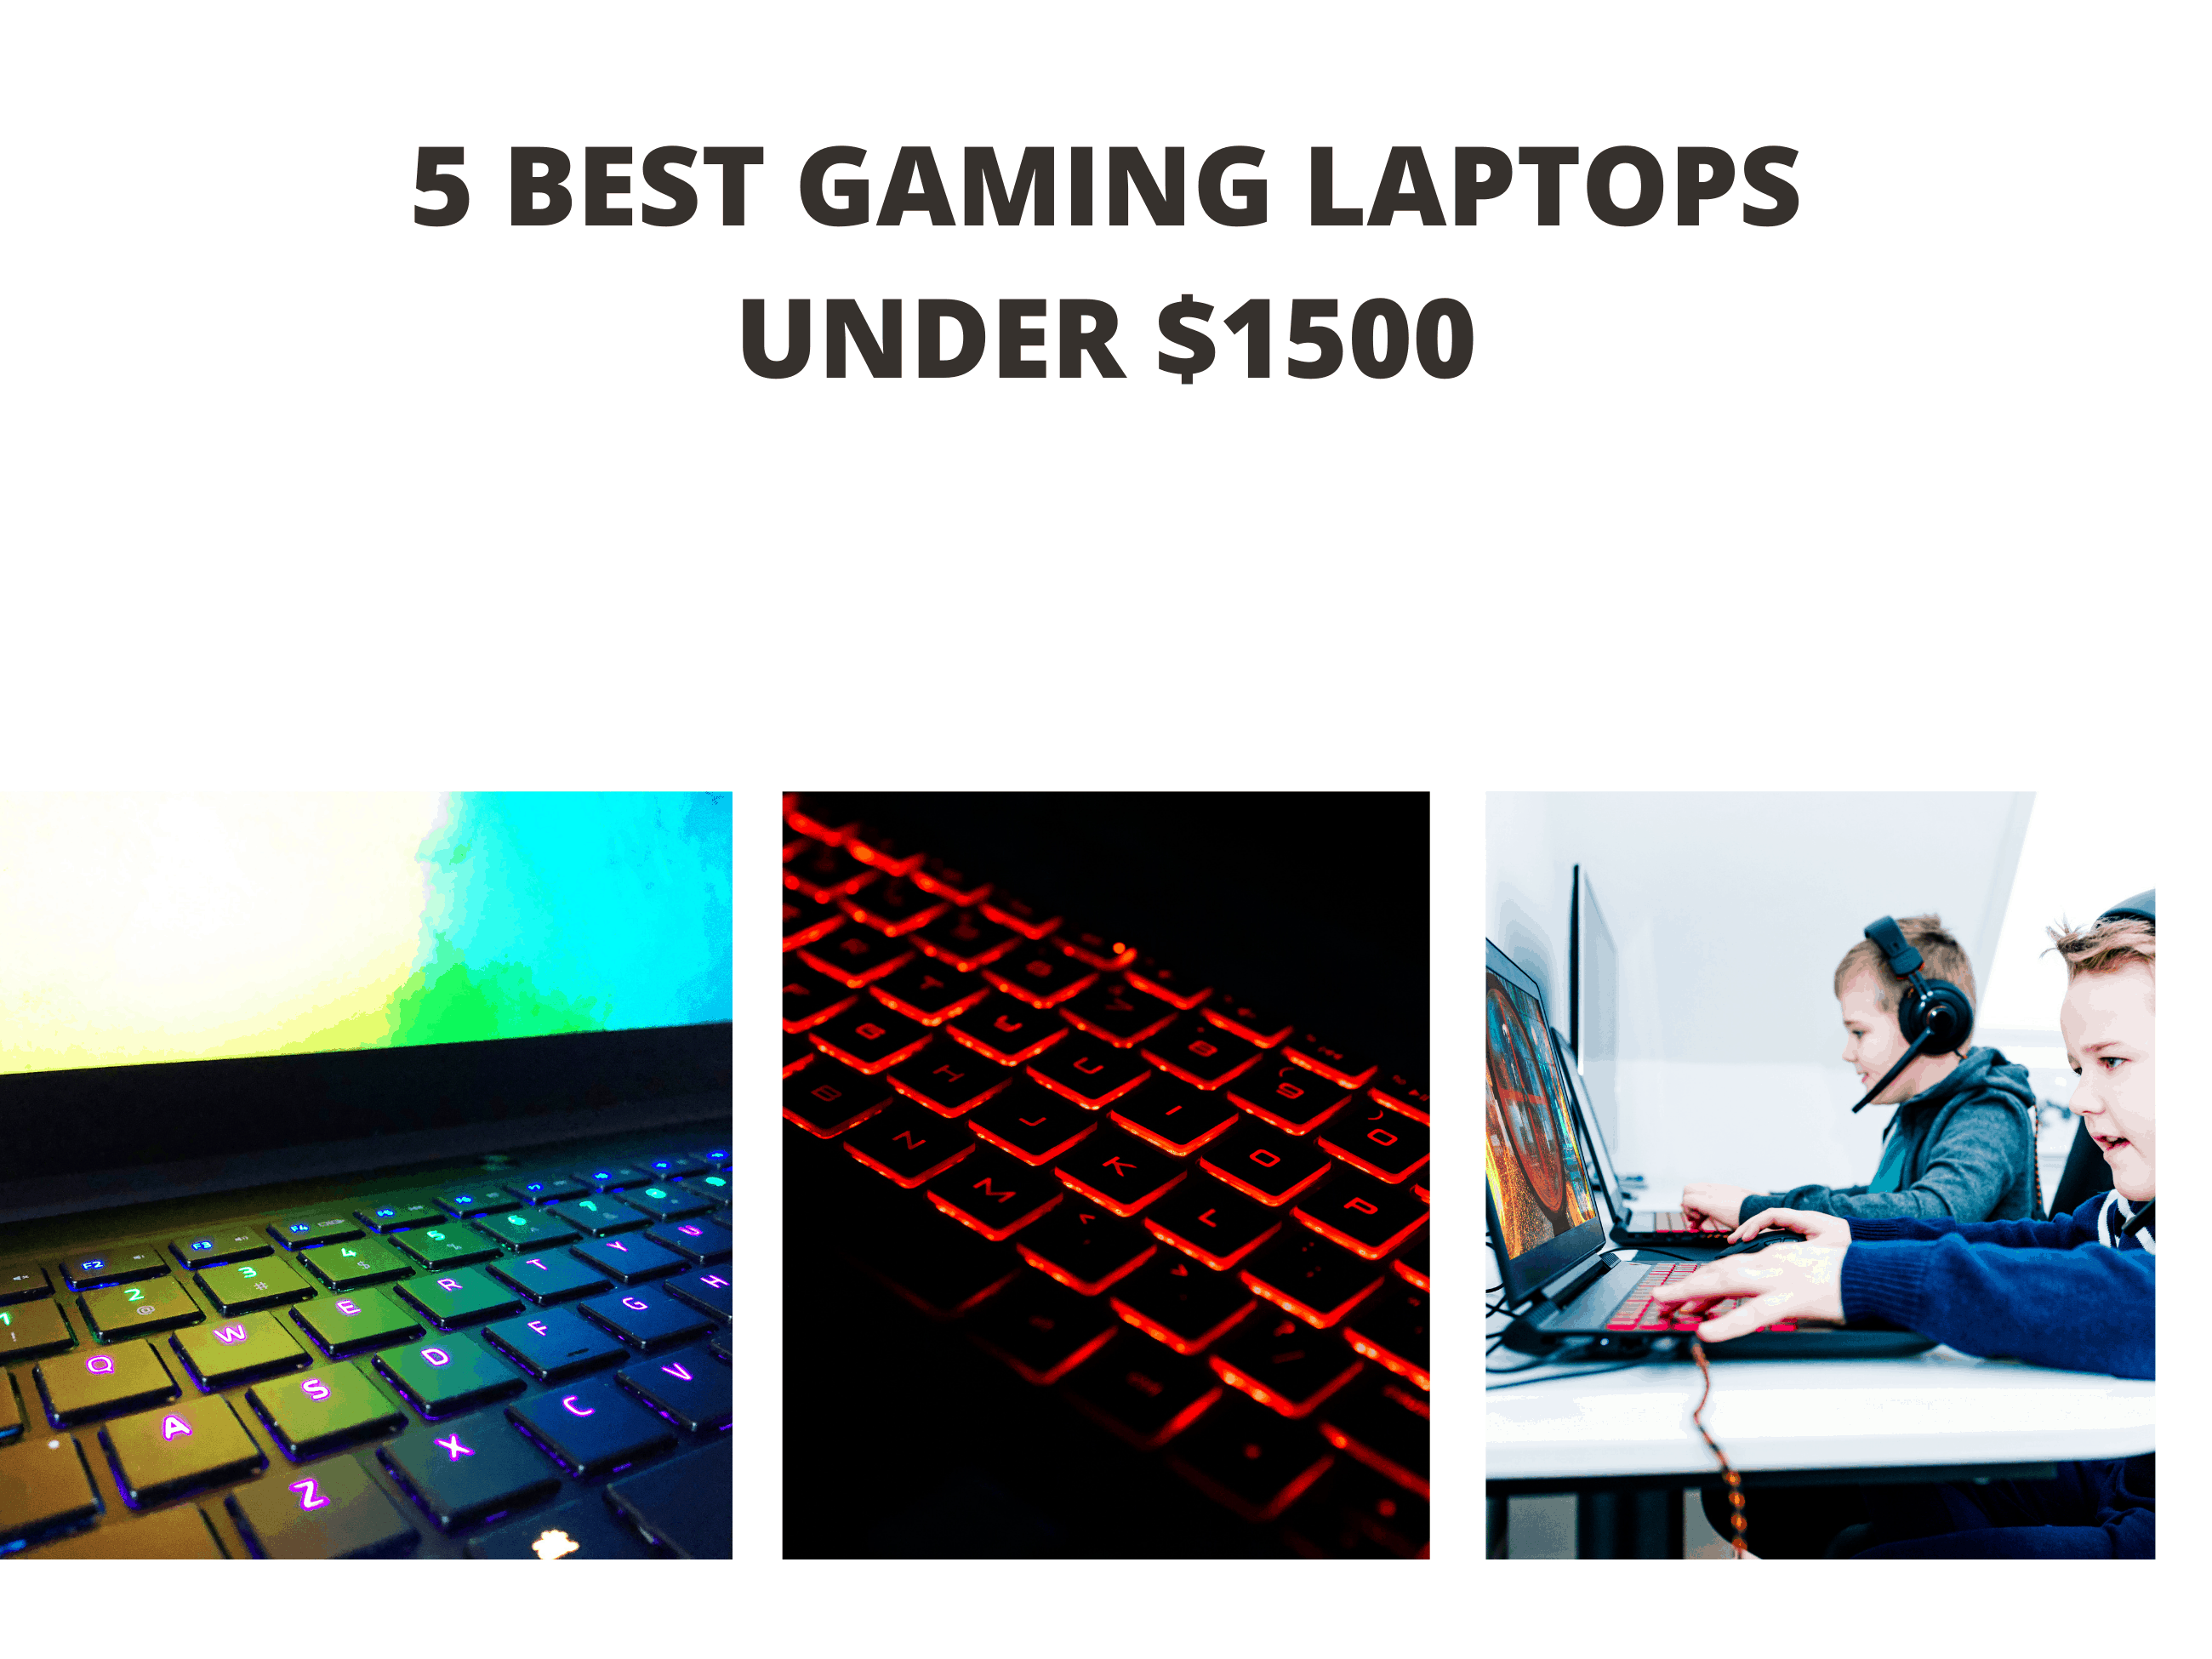 5 Best Gaming Laptops under $1500